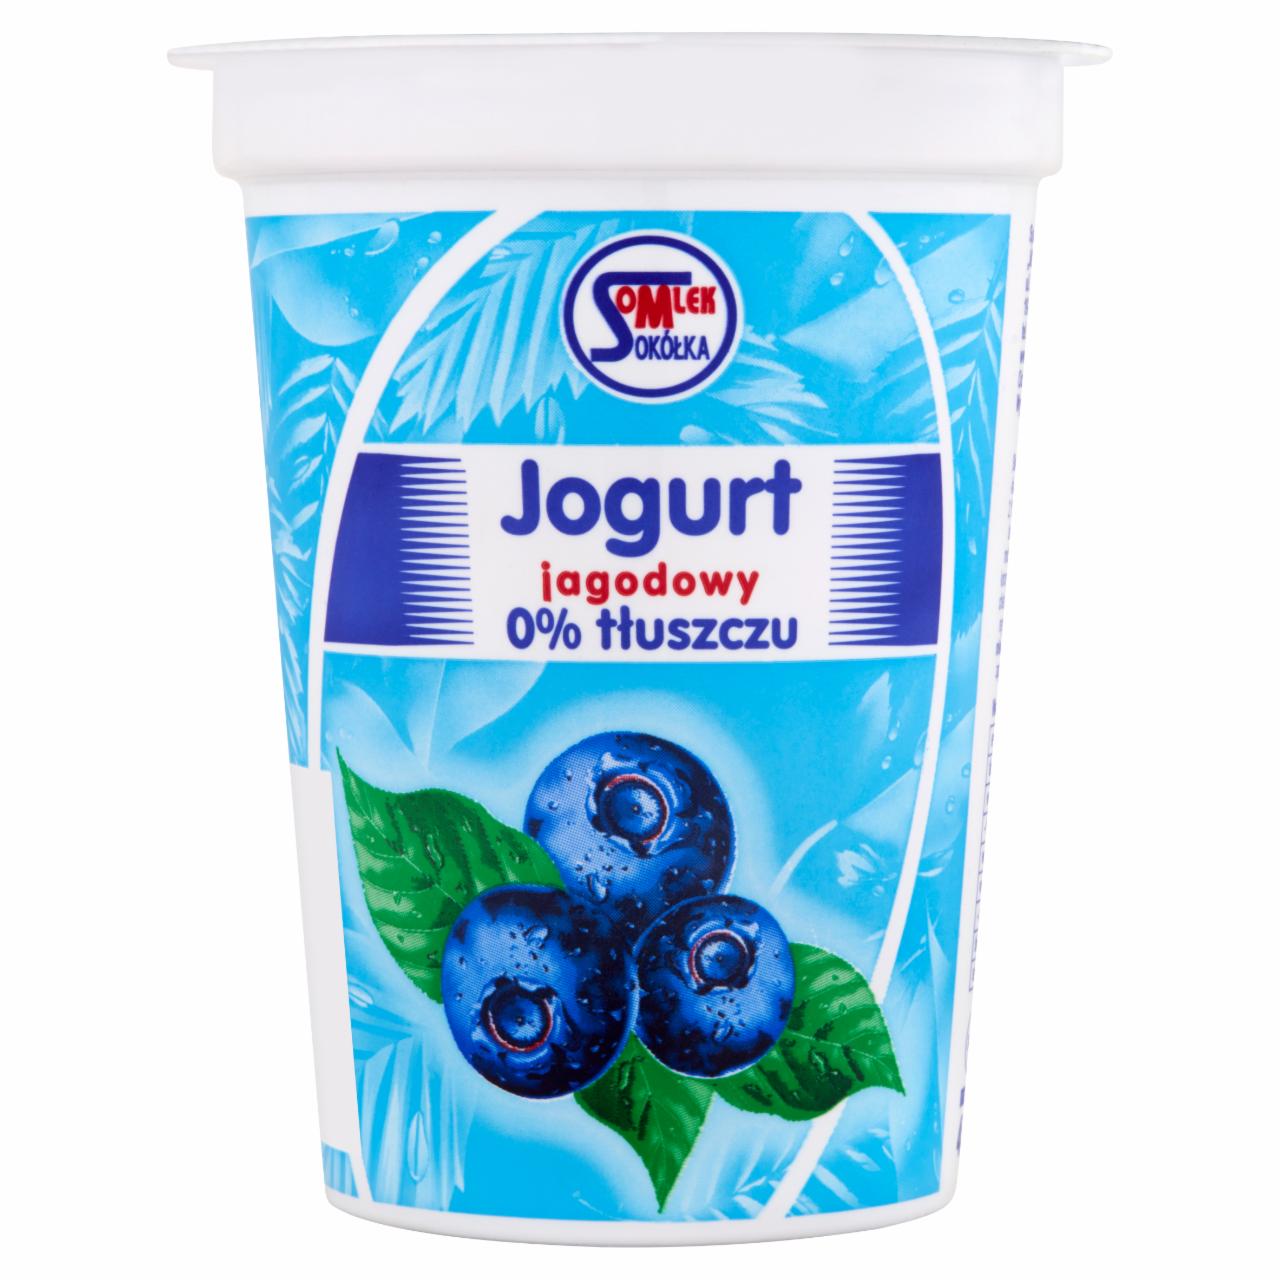 Zdjęcia - Jogurt jagodowy 0% tłuszczu 400 g